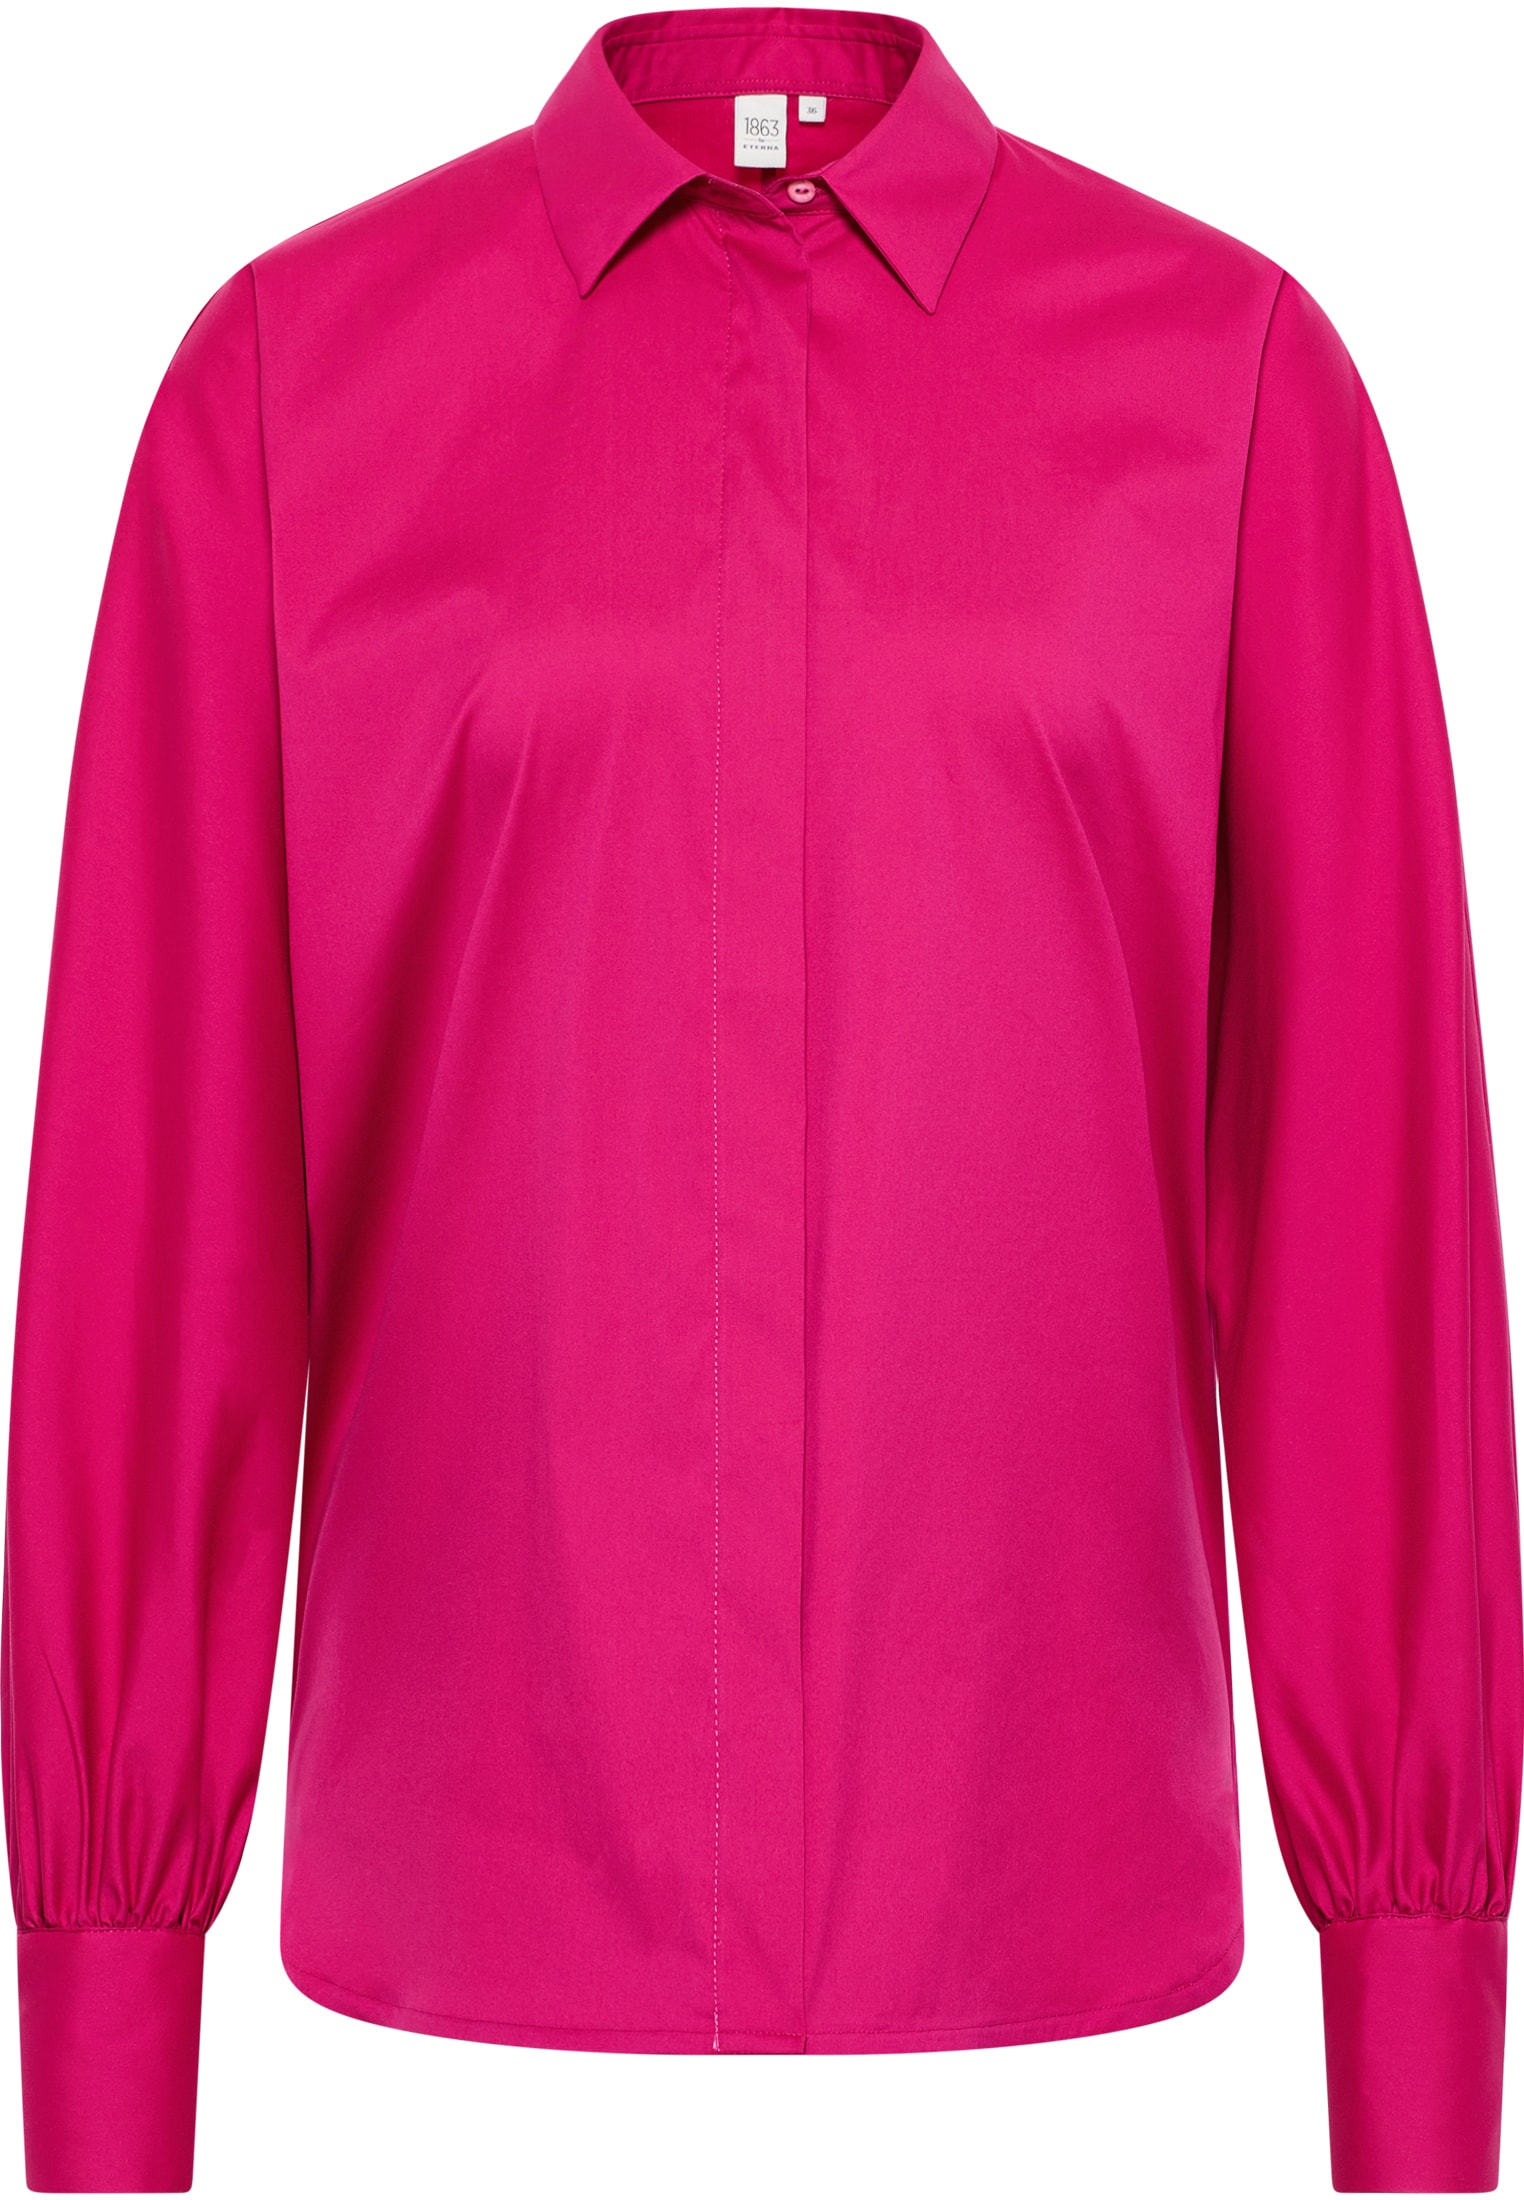 Blusenshirt in pink unifarben | pink | 36 | Langarm | 2BL03998-15-21-36-1/1